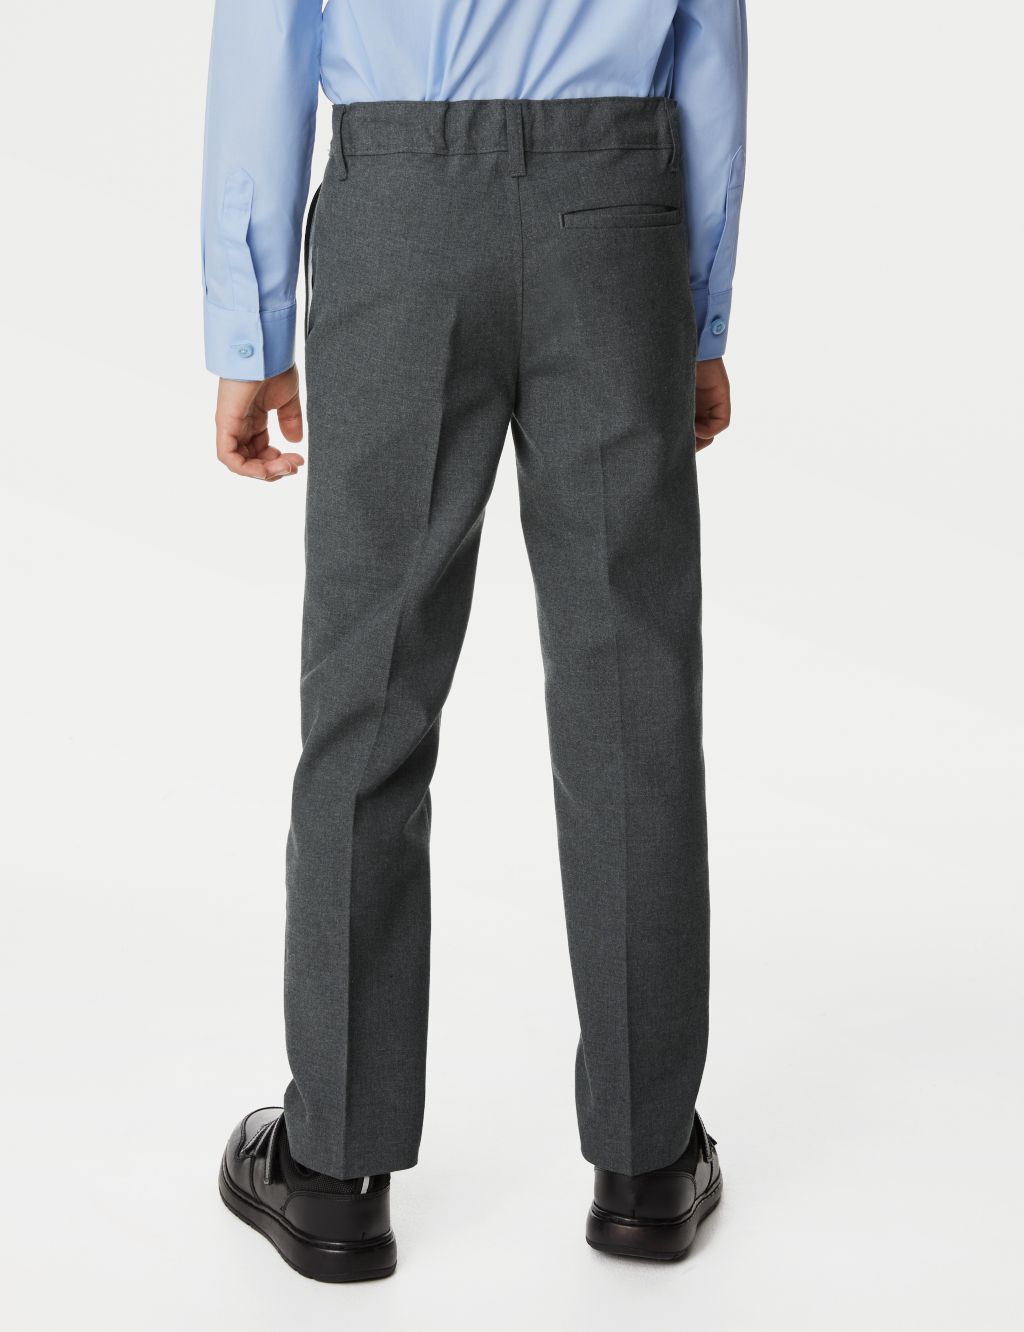 2pk Boys' Slim Leg Plus Waist School Trousers  (2-18 Yrs) image 3